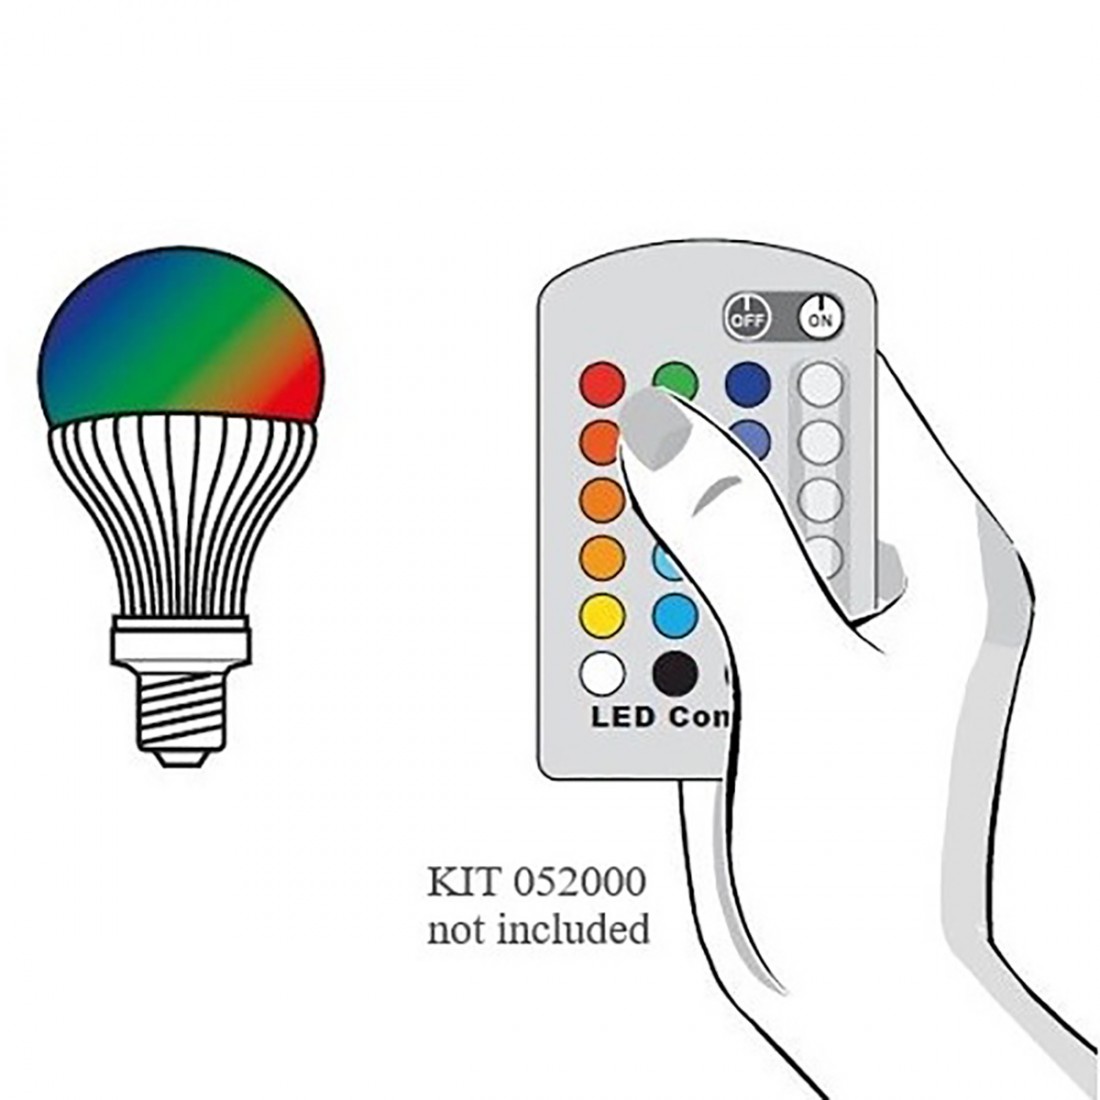 Linea Light group OH FL65 E27 052000 Accessoire ampoule LED RGB